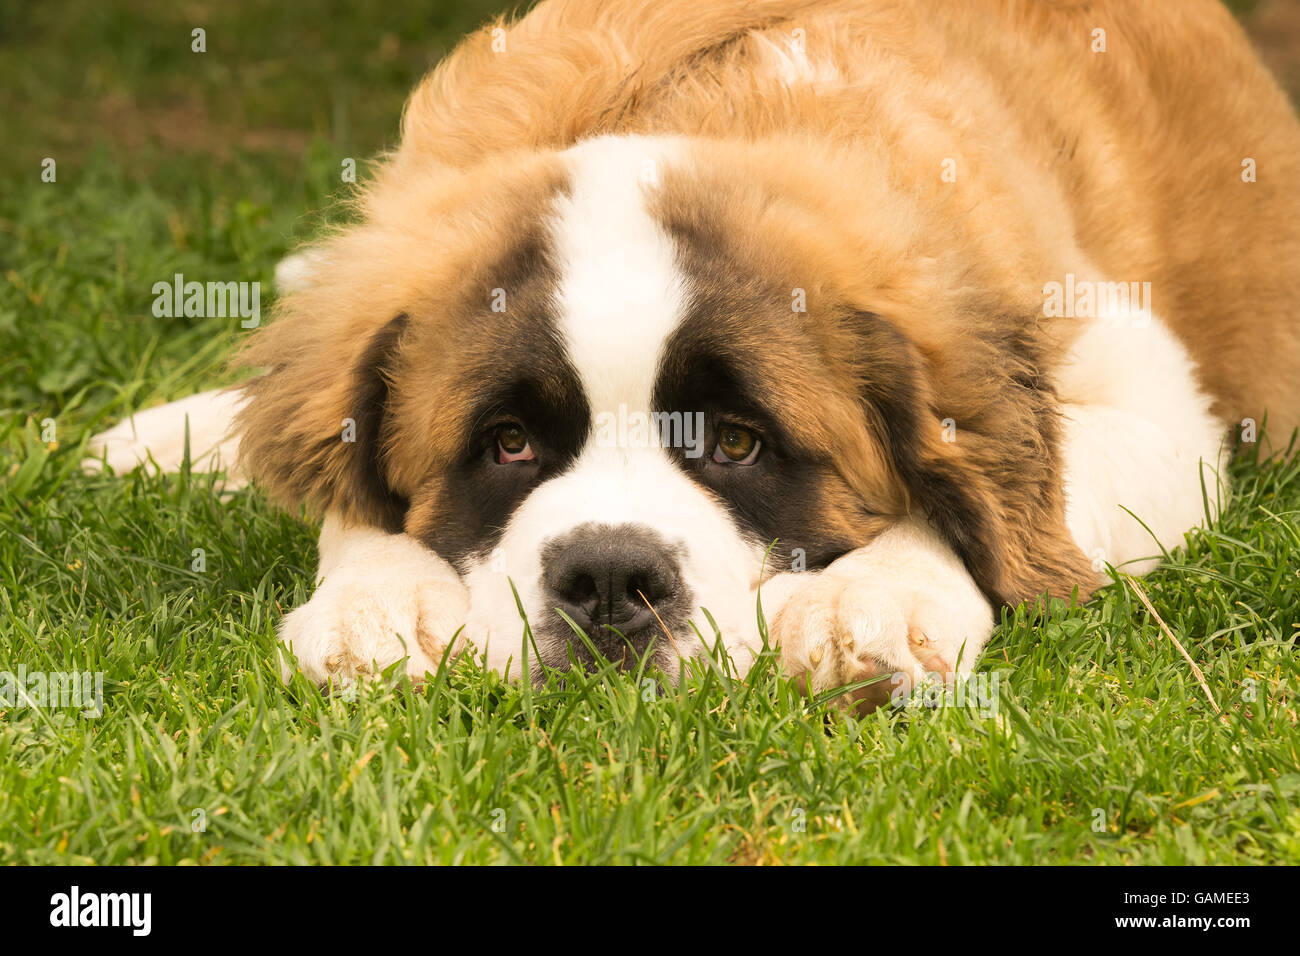 Saint Bernard dog puppy at a park. A cute moment. Stock Photo